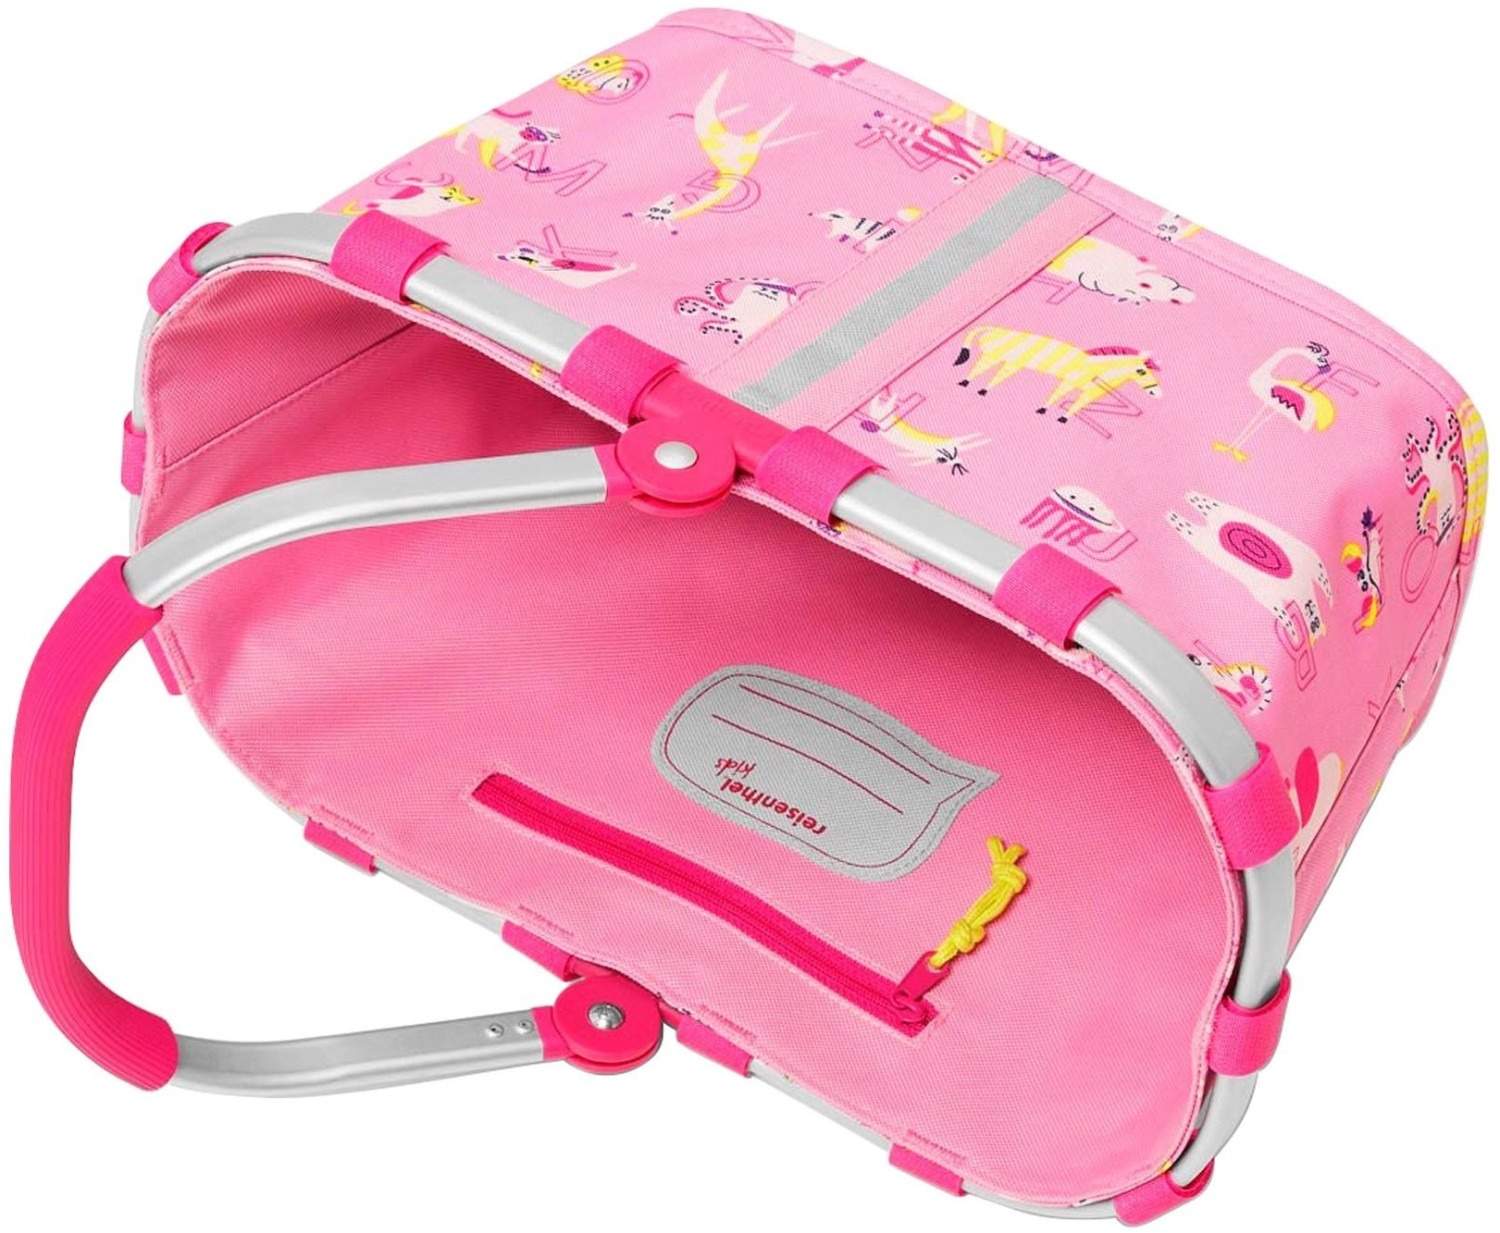 Reisenthel Carrybag XS Kids Kinder Einkaufskorb Einkaufstasche